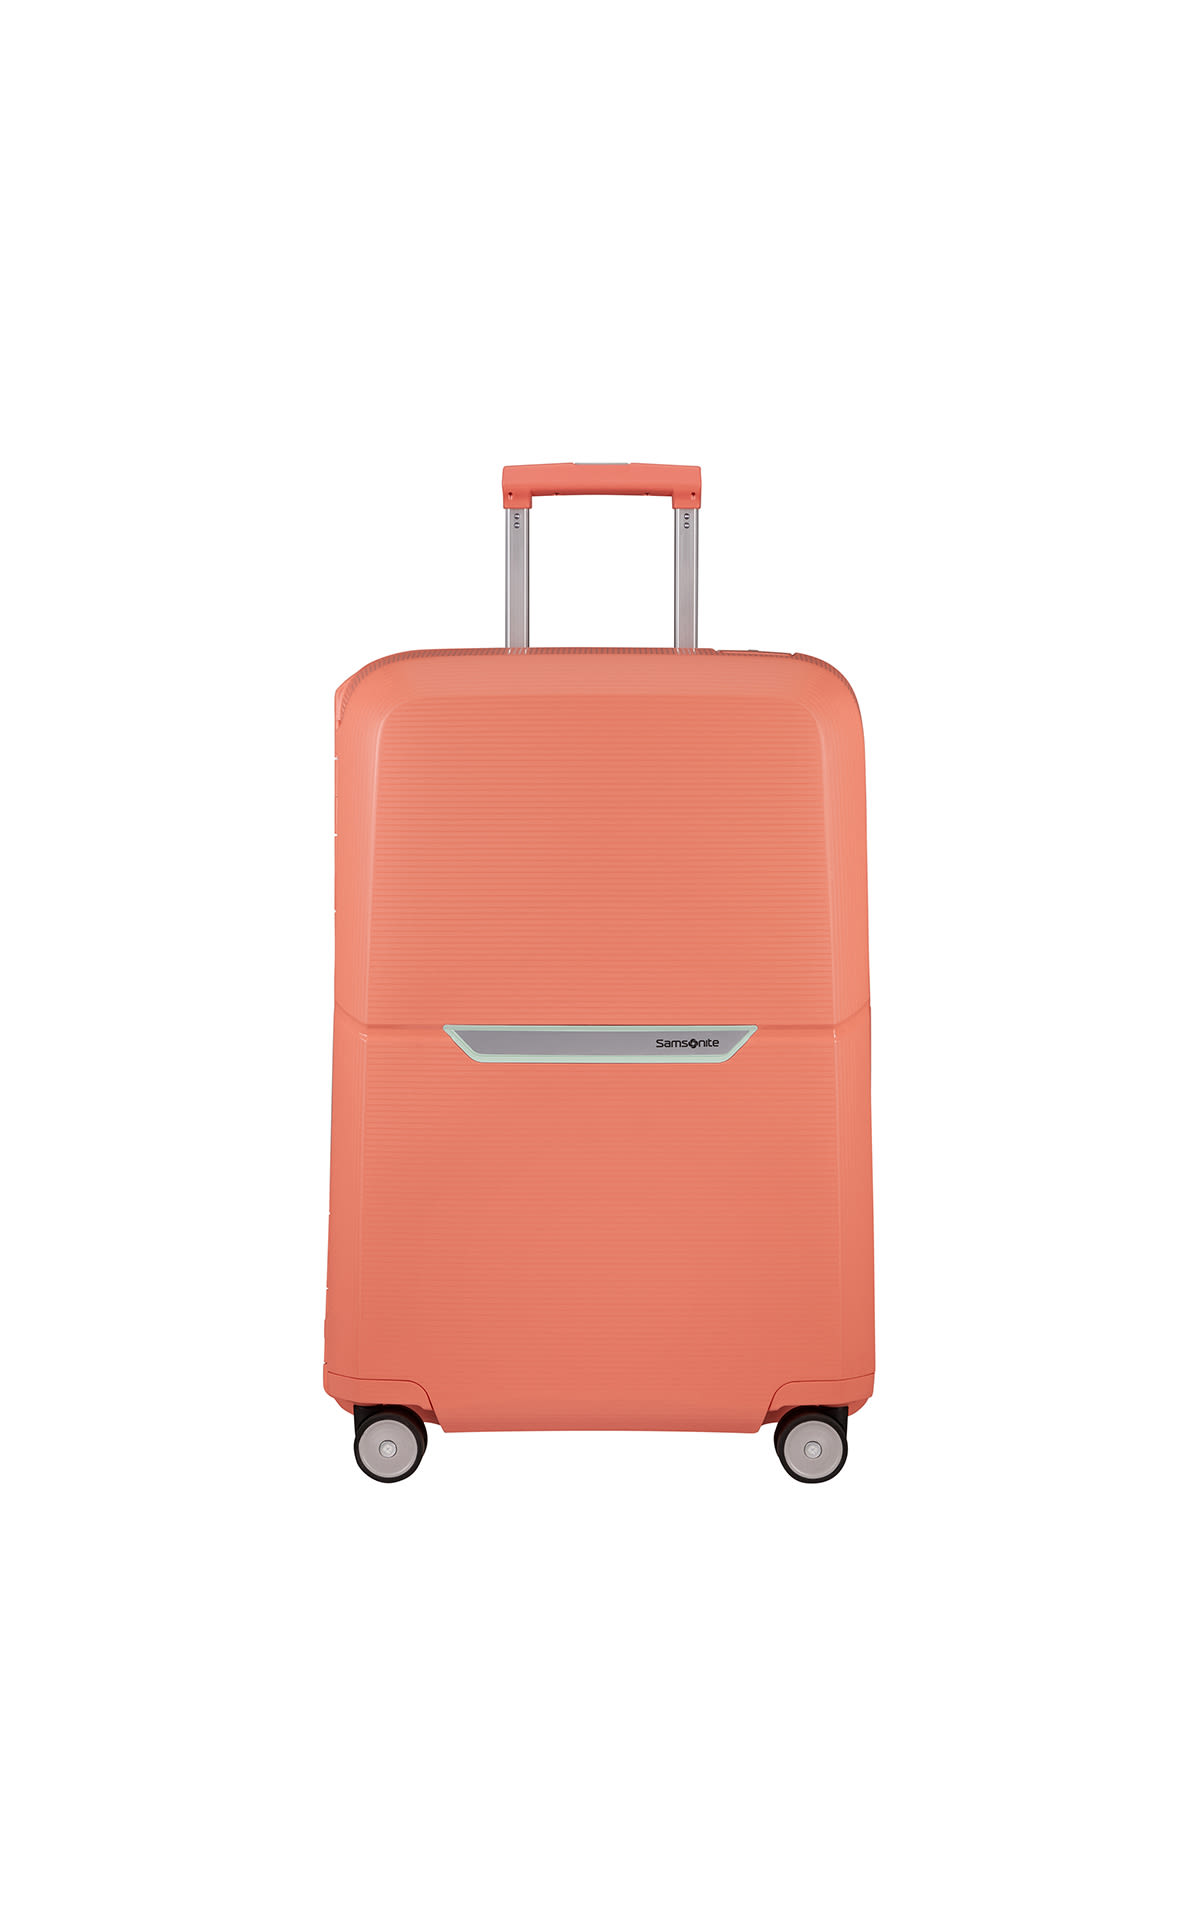 Samsonite coral pink Magnum Spinner suitcase La Vallée Village